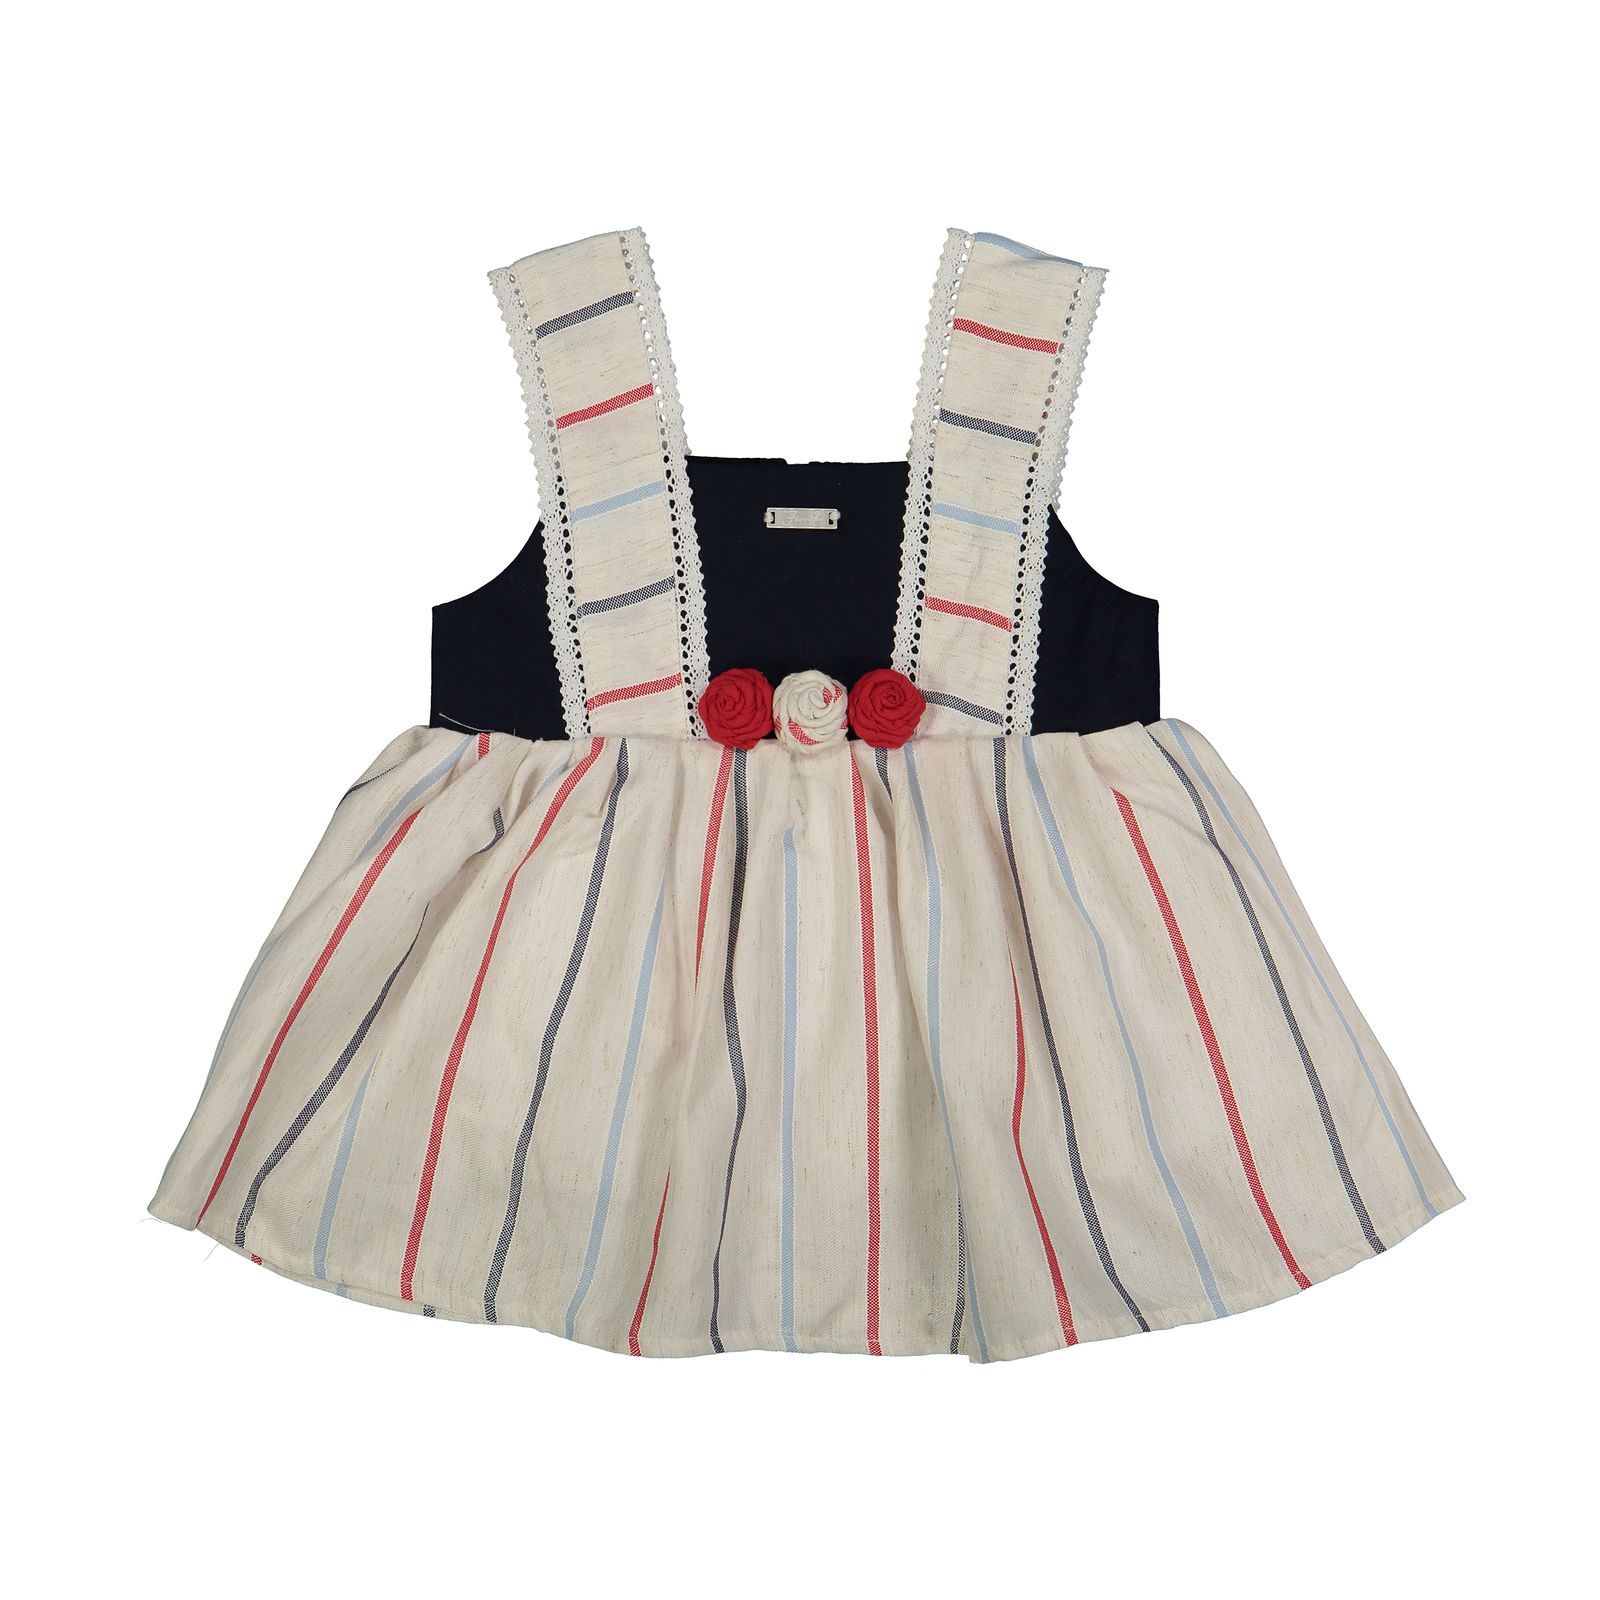 پیراهن نوزادی دخترانه فیورلا مدل 2091121-01 -  - 1